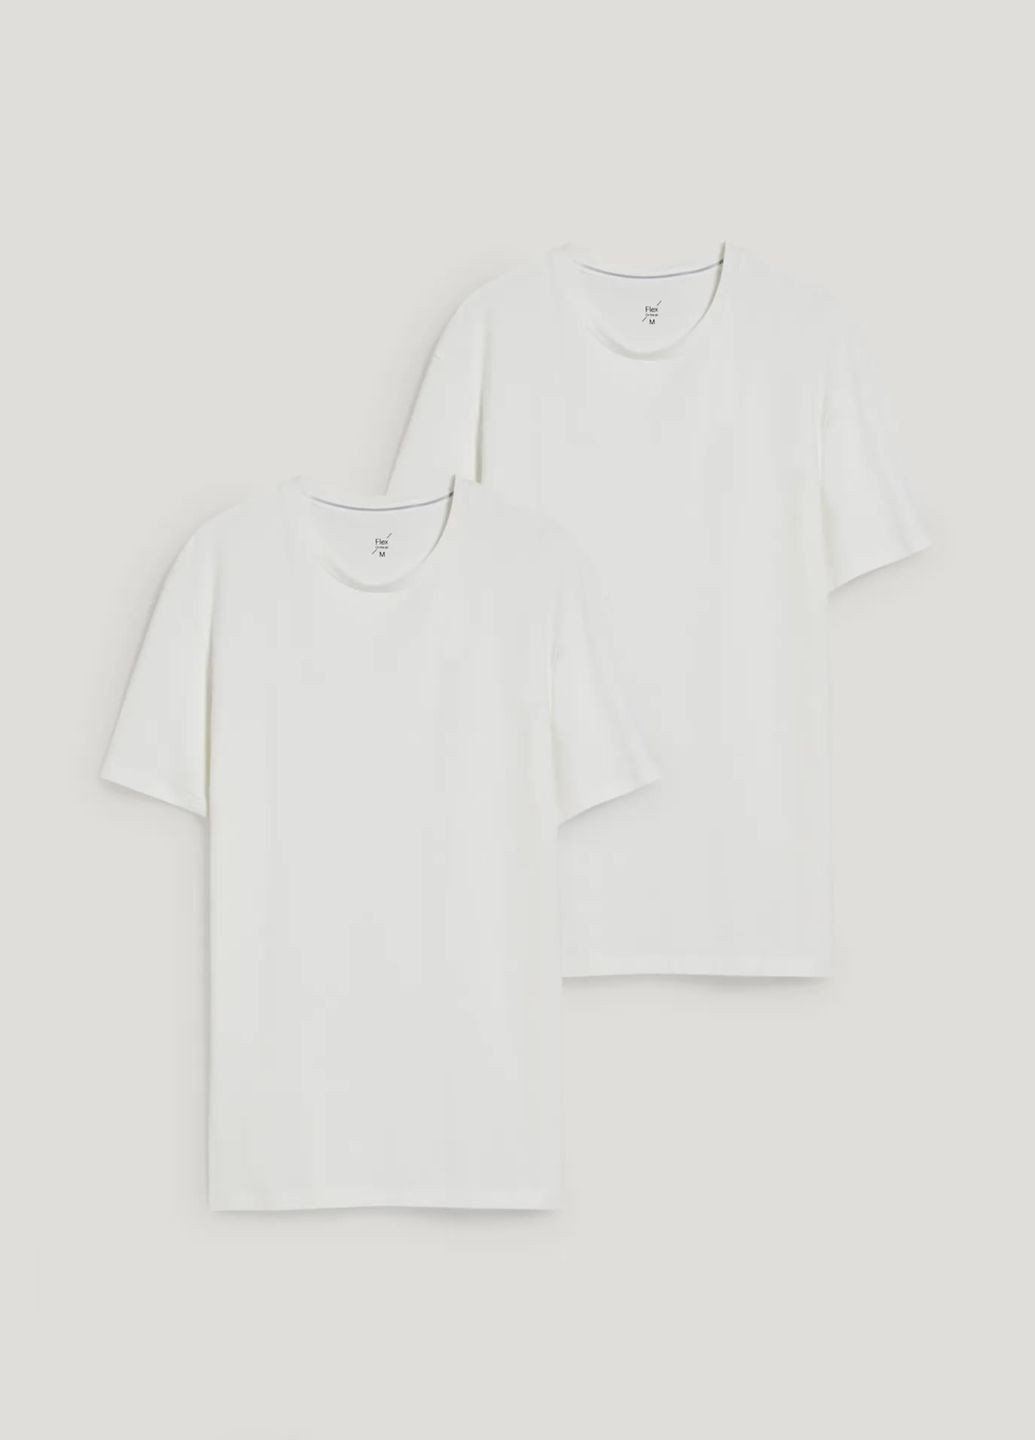 Белая комлект футболок стрейч (2шт) C&A